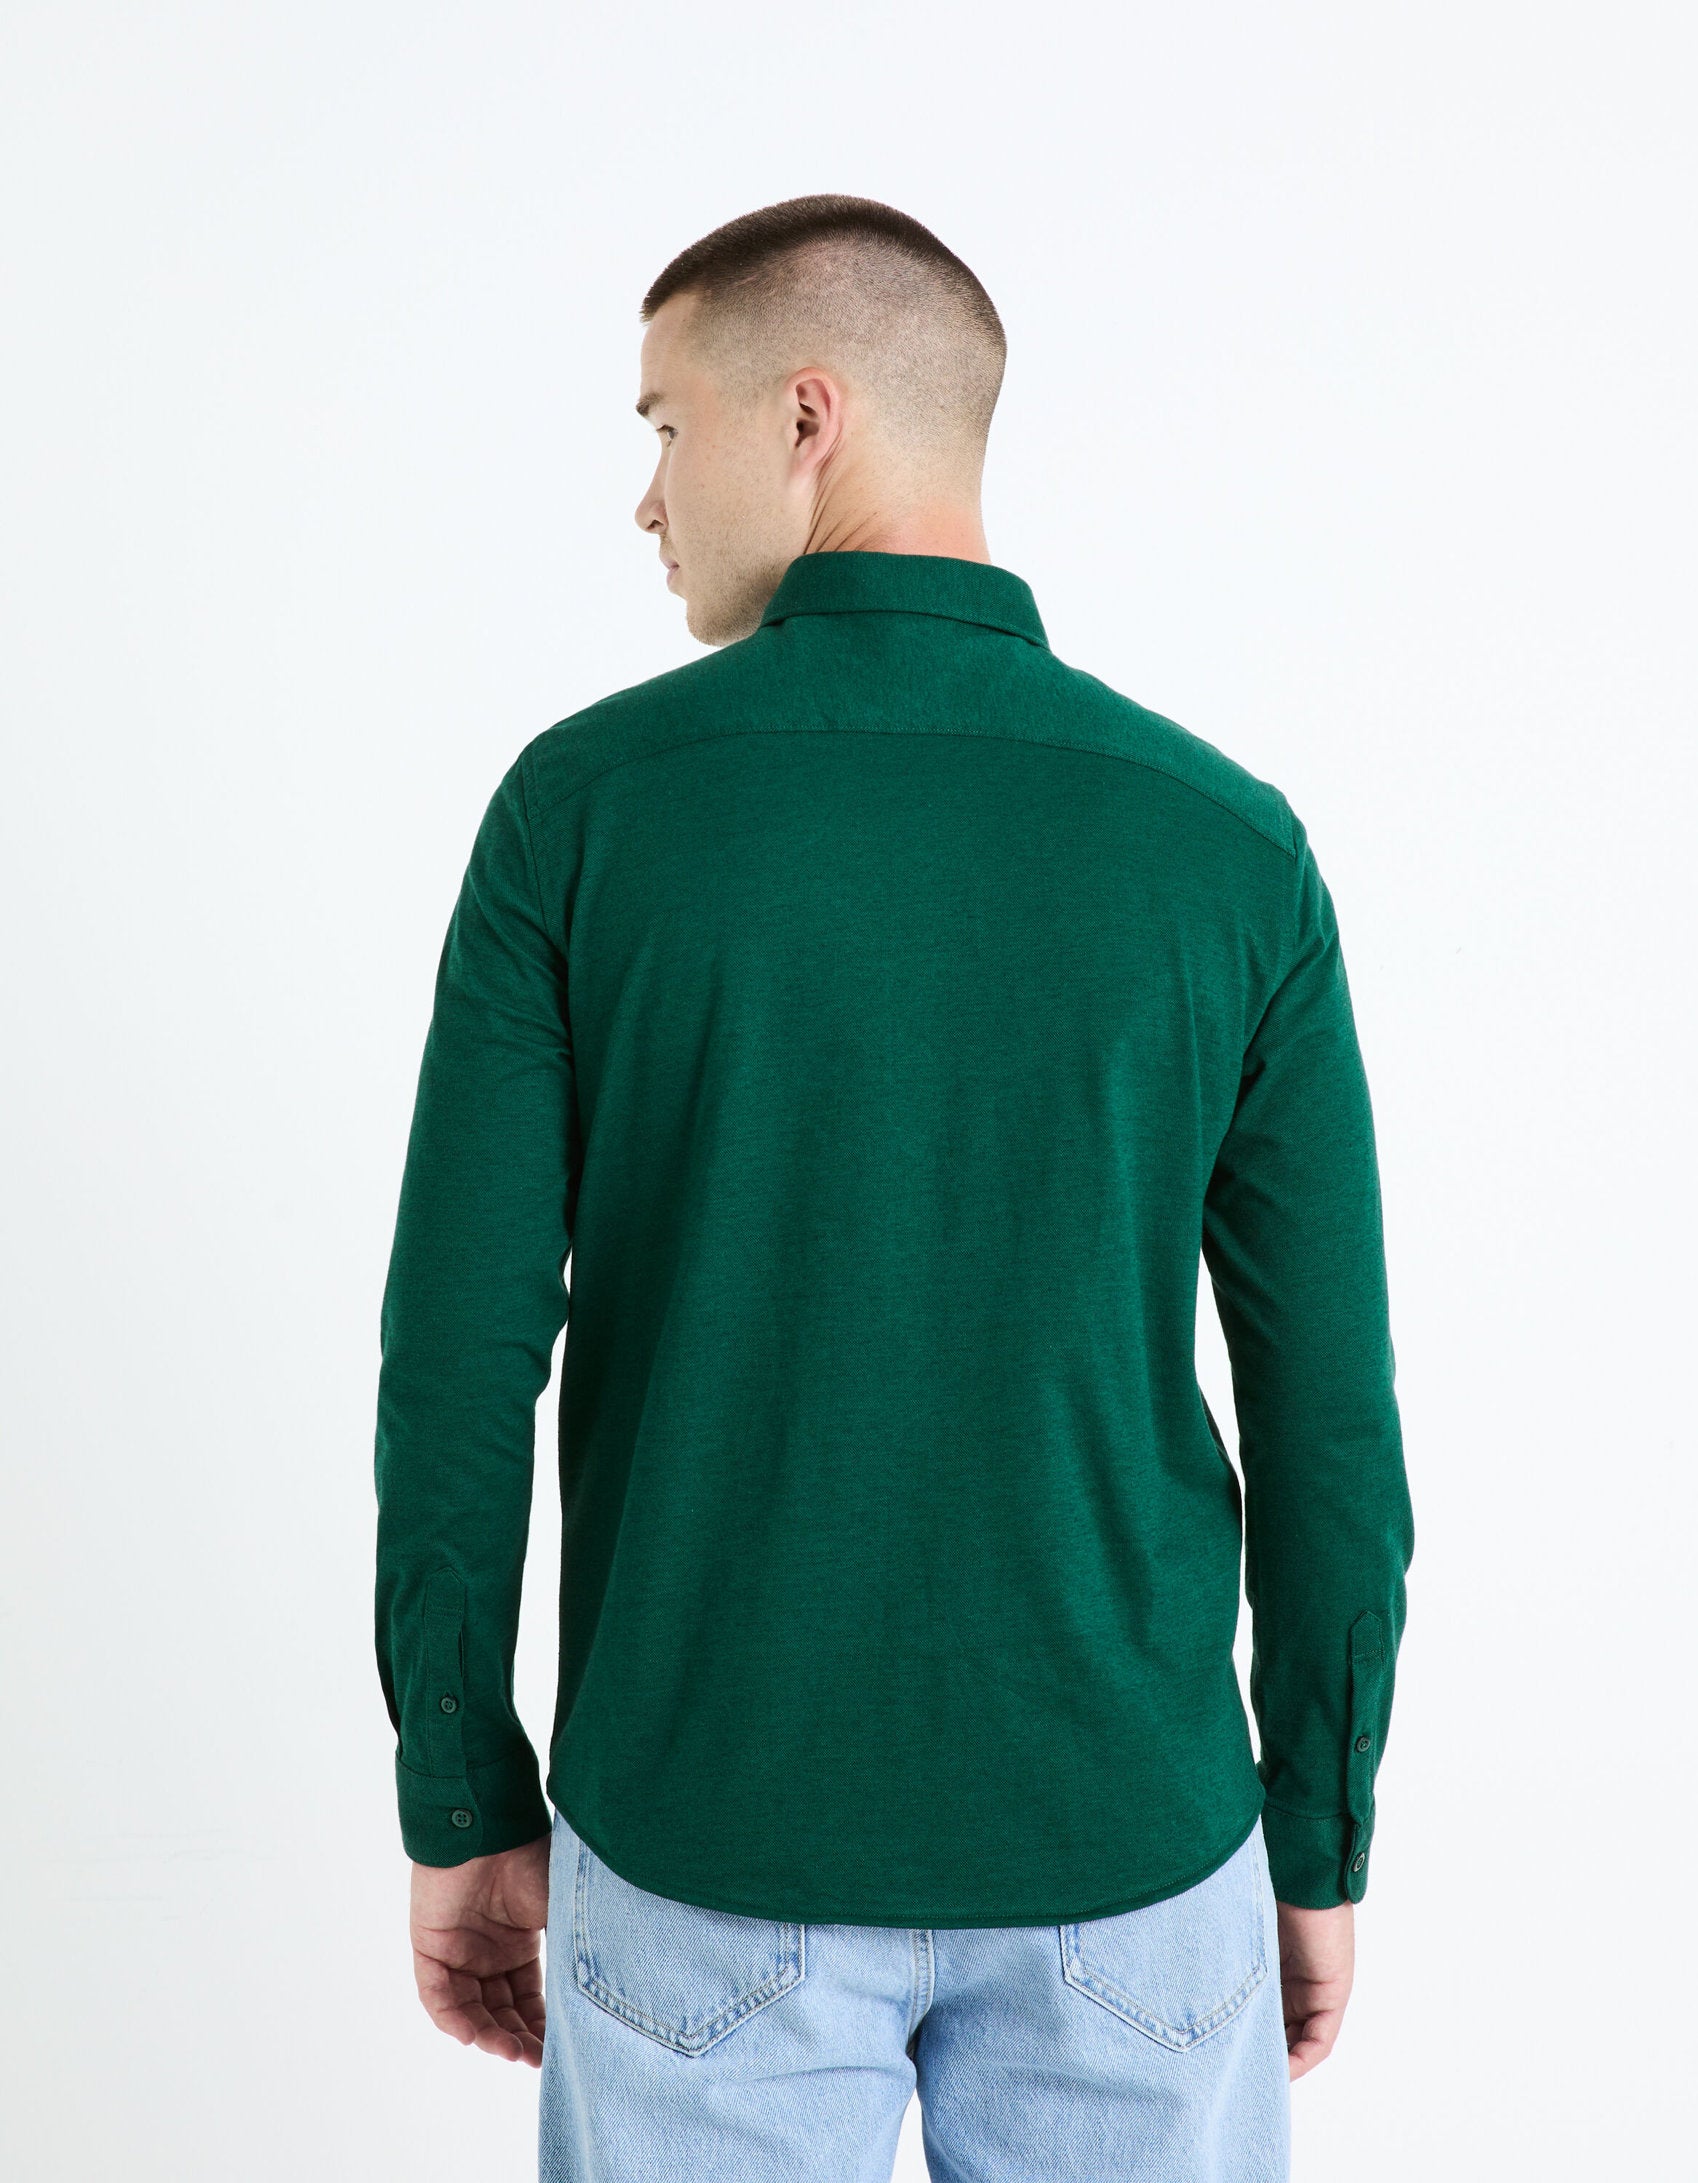 Regular 100% Cotton Pique Knit Shirt - Green_BAPIK_DARK GREEN_04